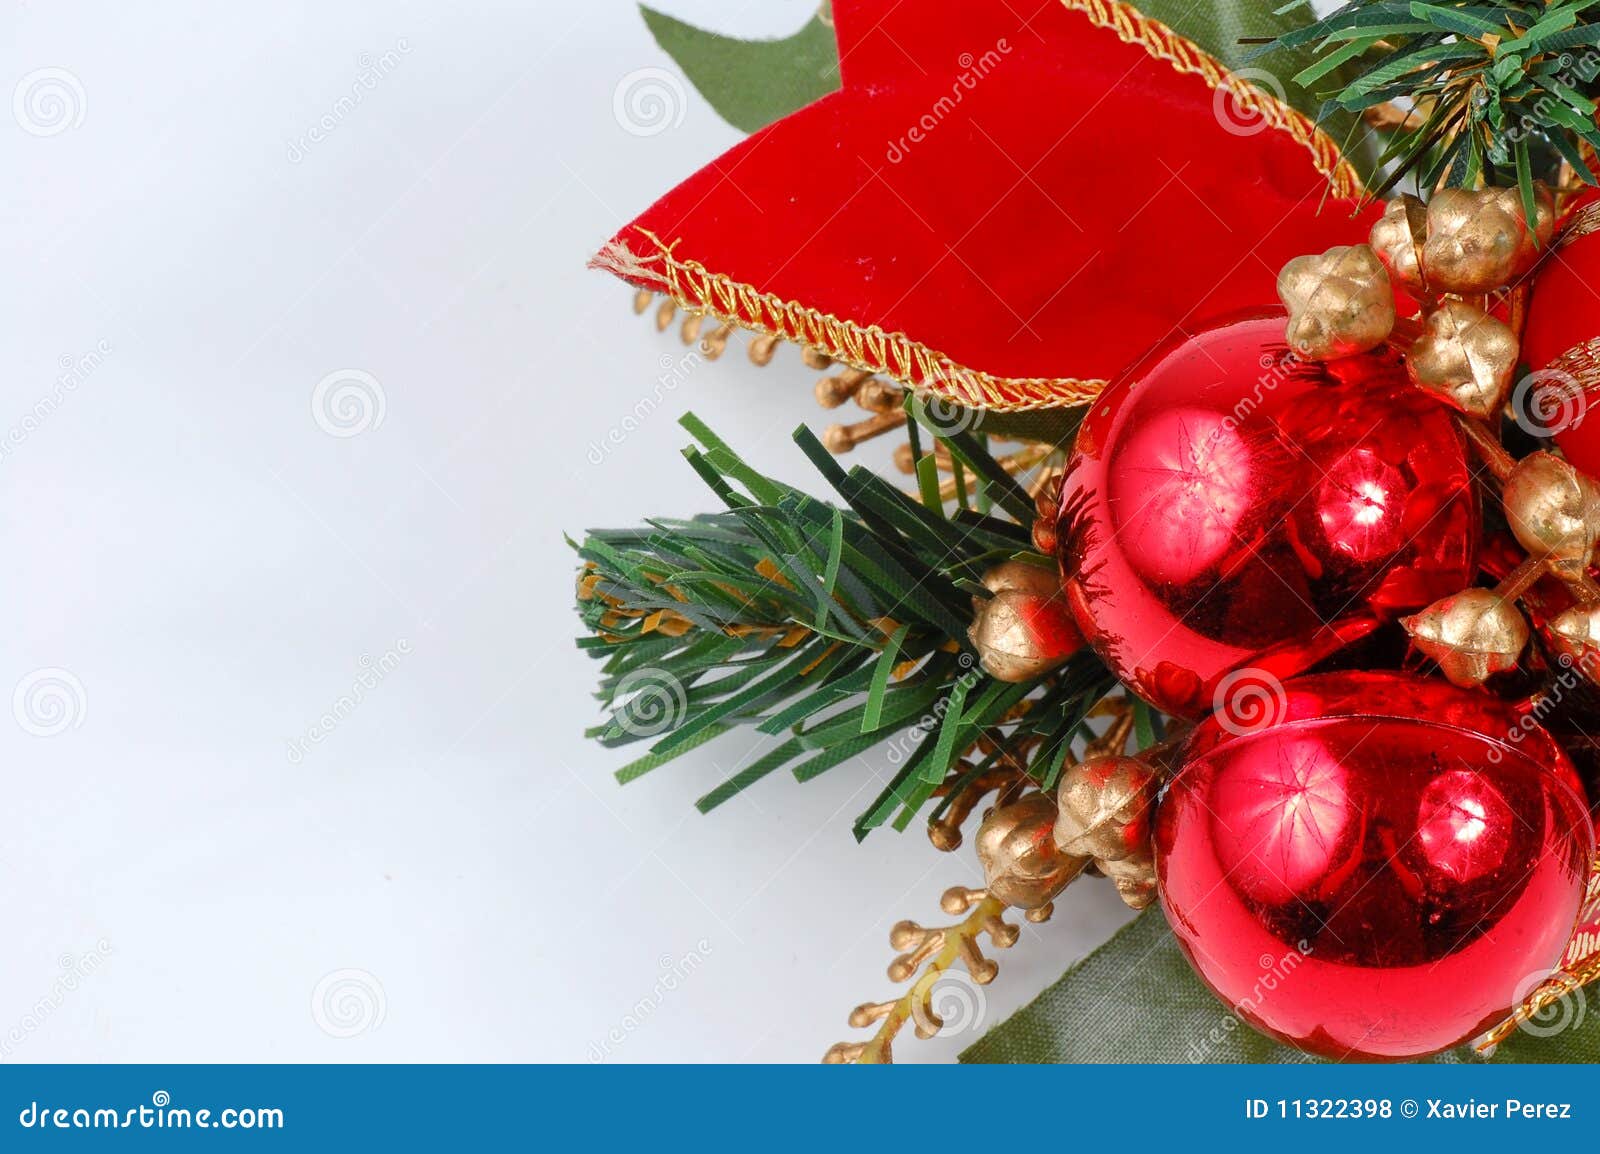 Christmas Decoration Isolated on White Backgro Stock Photo - Image of ...